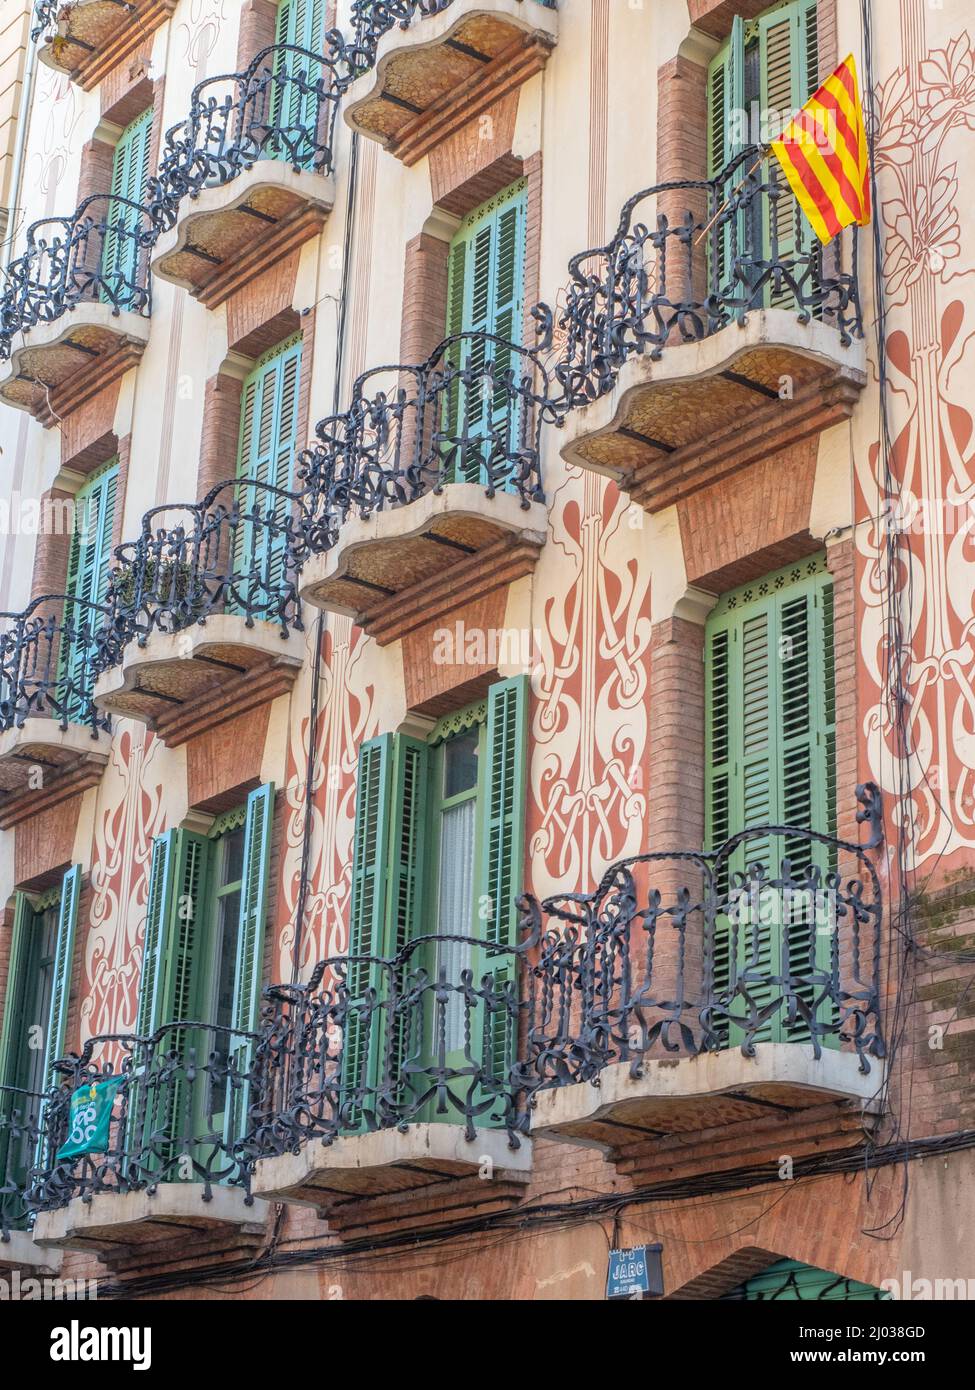 Sgraffito facade of Barcelona building with Catalan flag, Barcelona, Catalonia, Spain, Europe Stock Photo